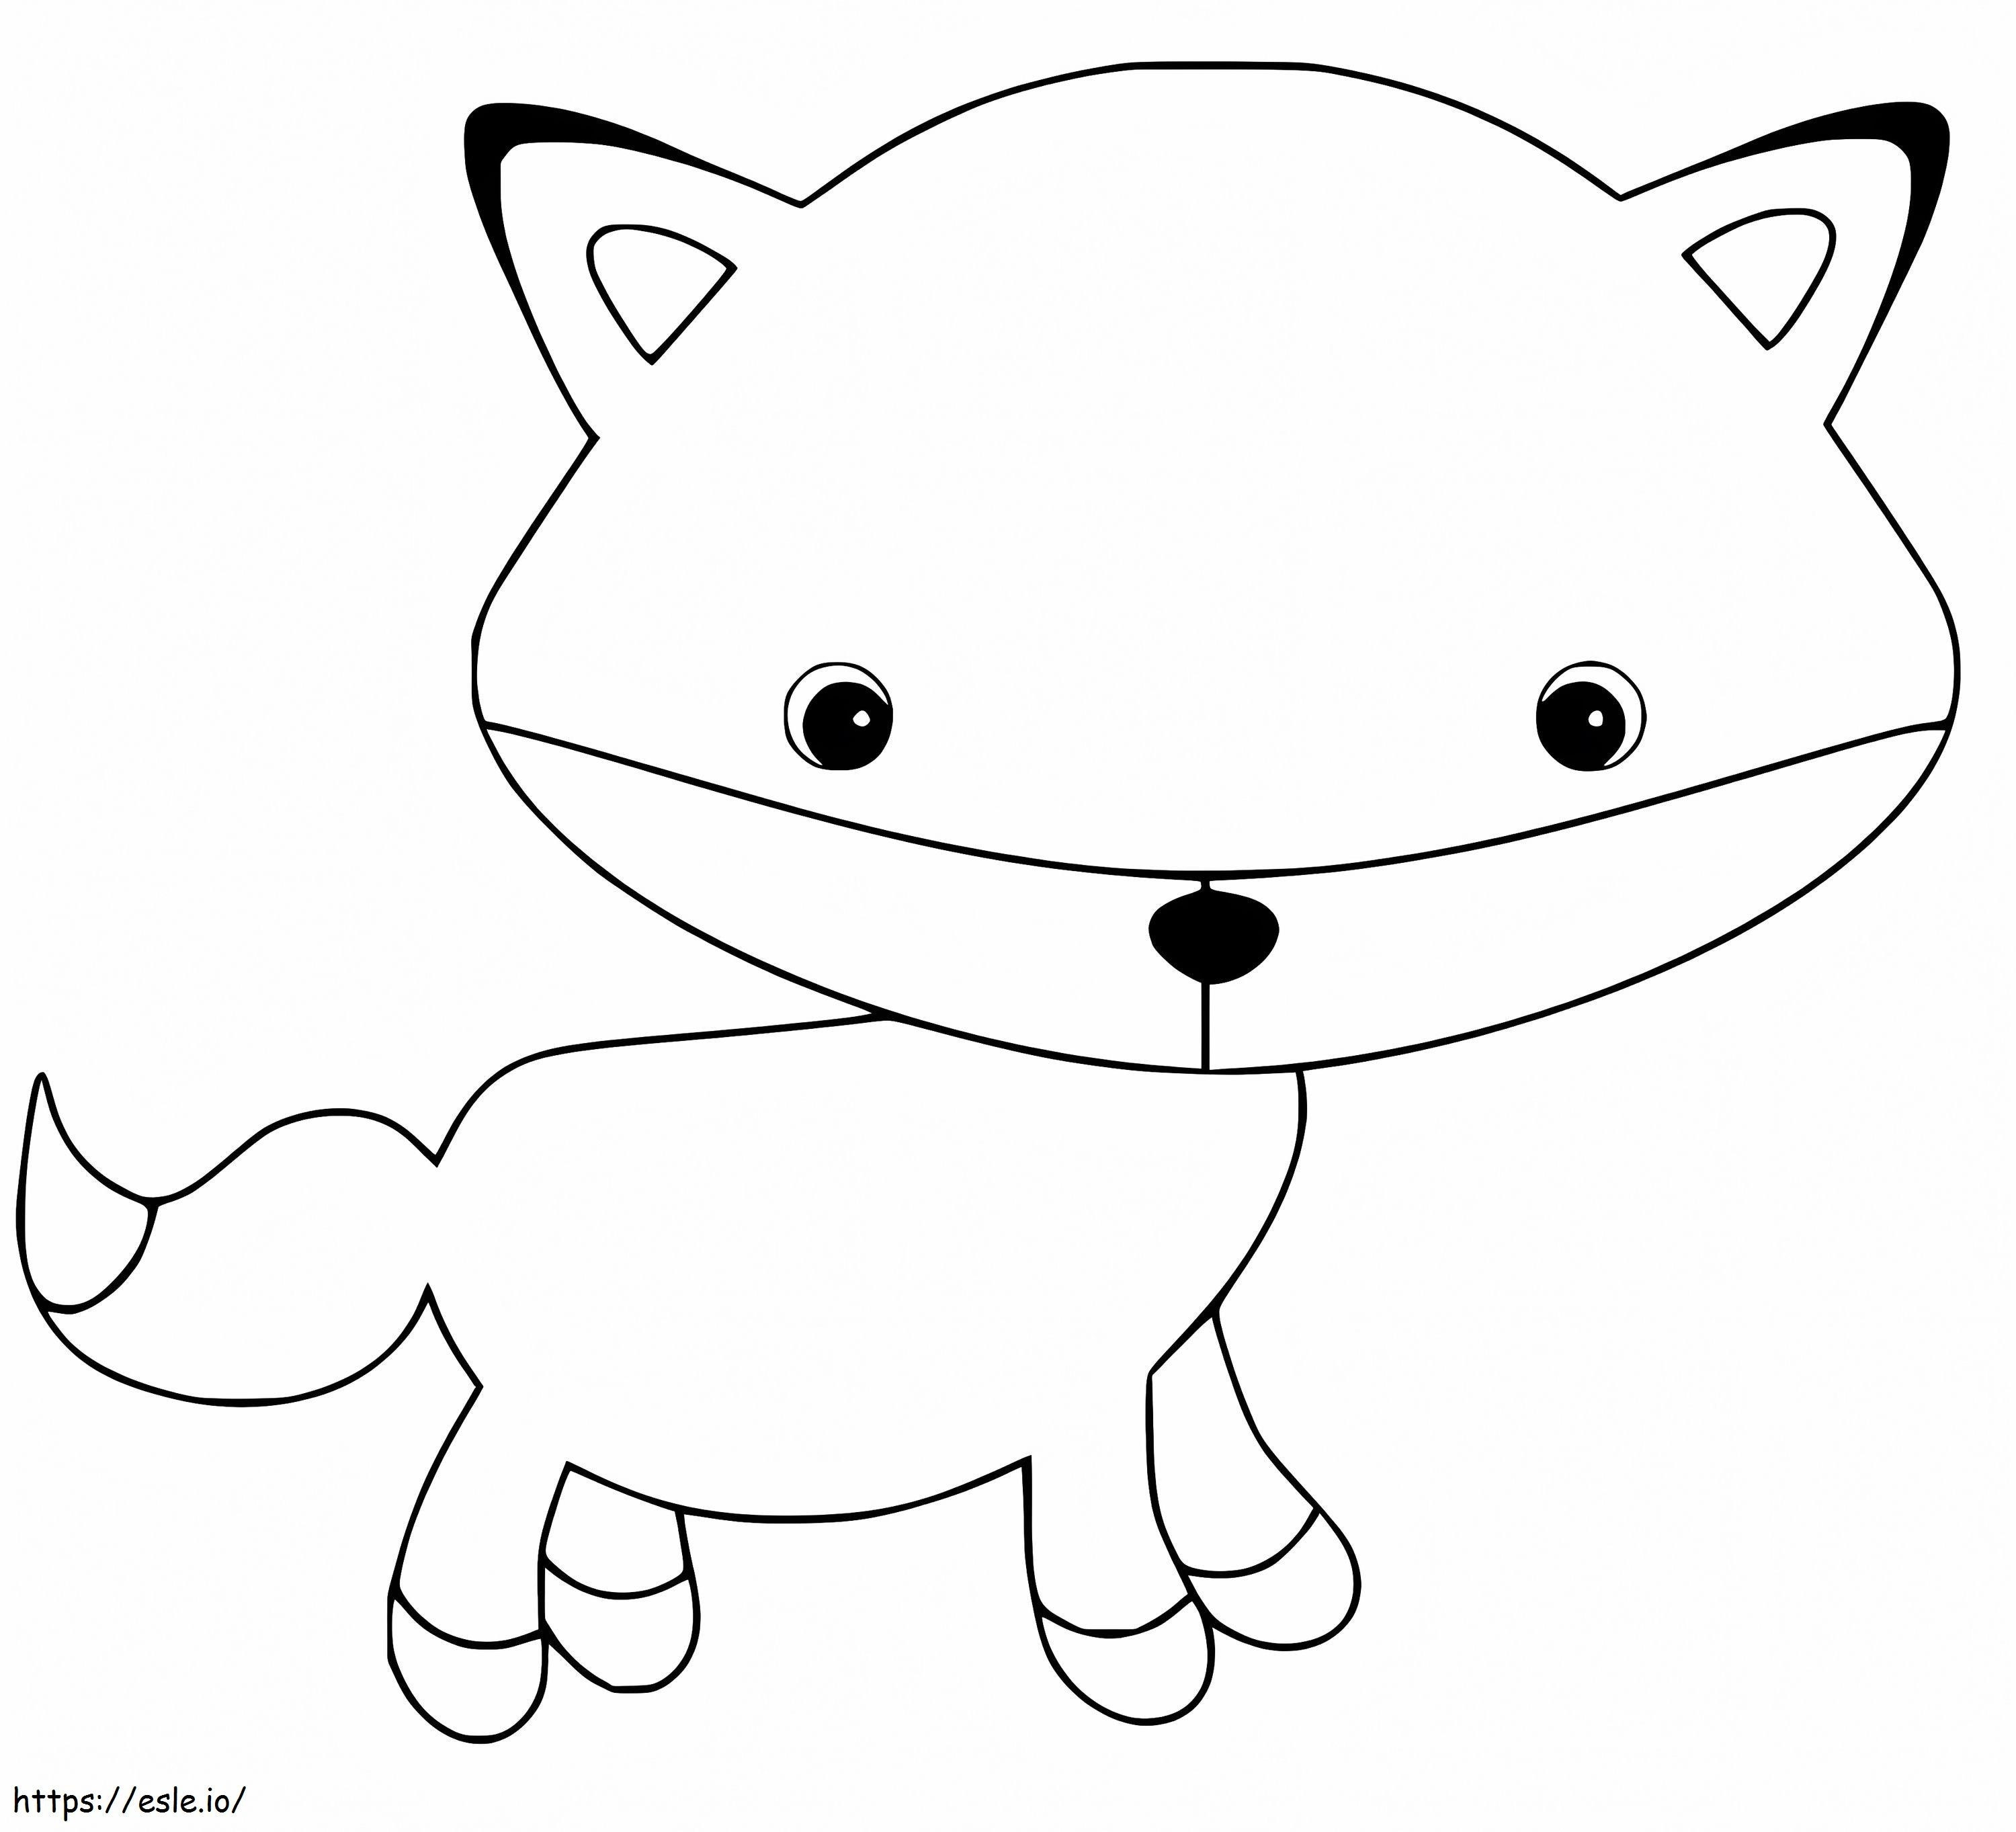 Cute Big Head Fox coloring page